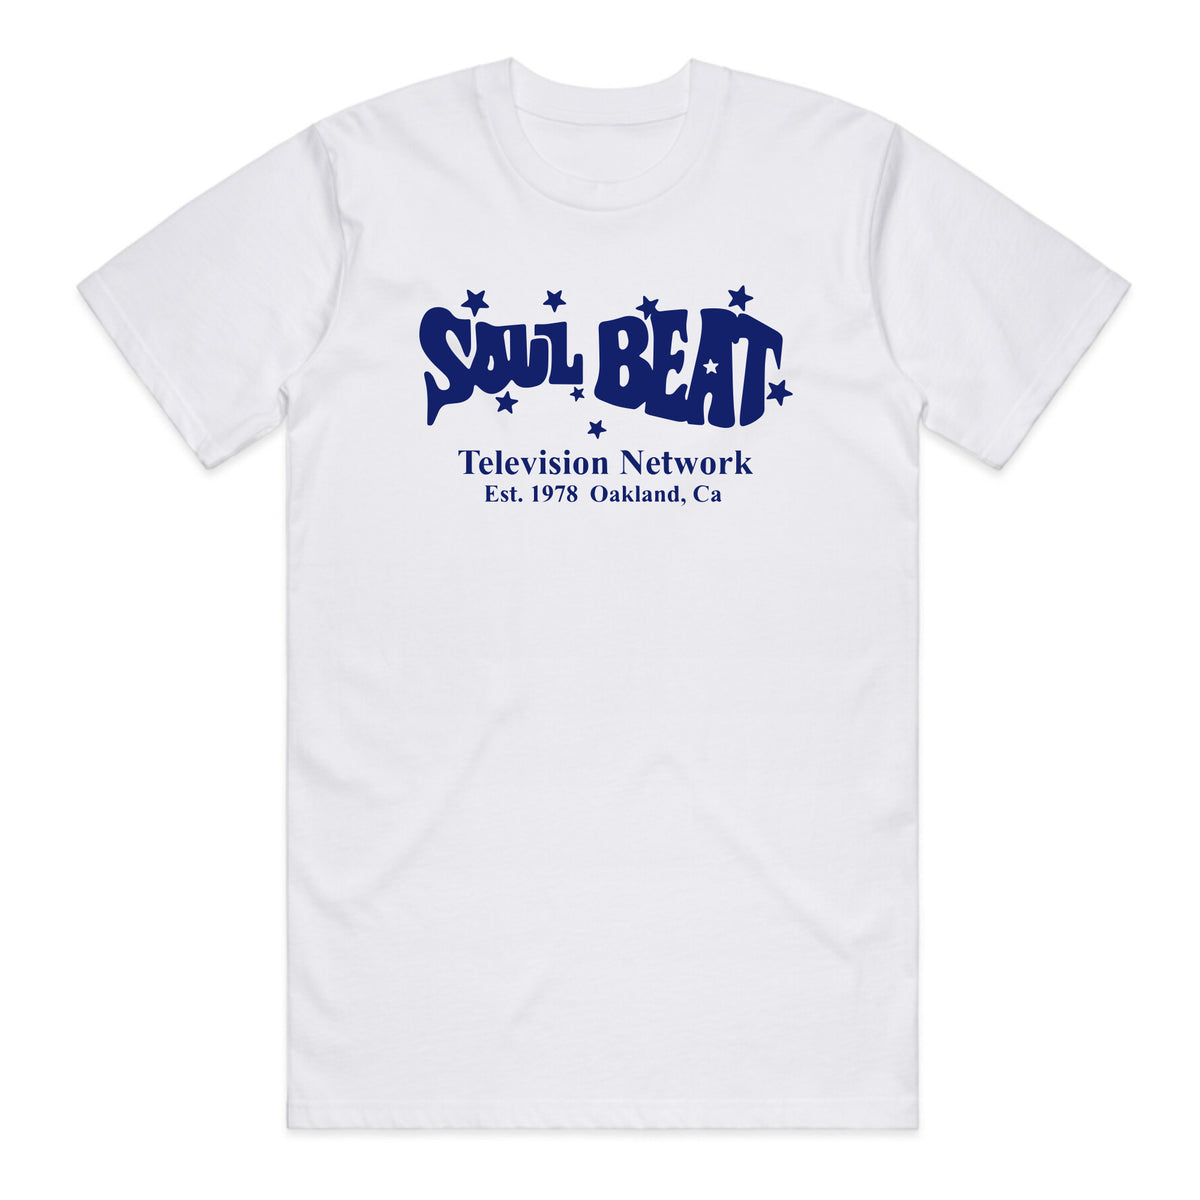 Soul Beat Est 1978 T-Shirt - White w/ Blue